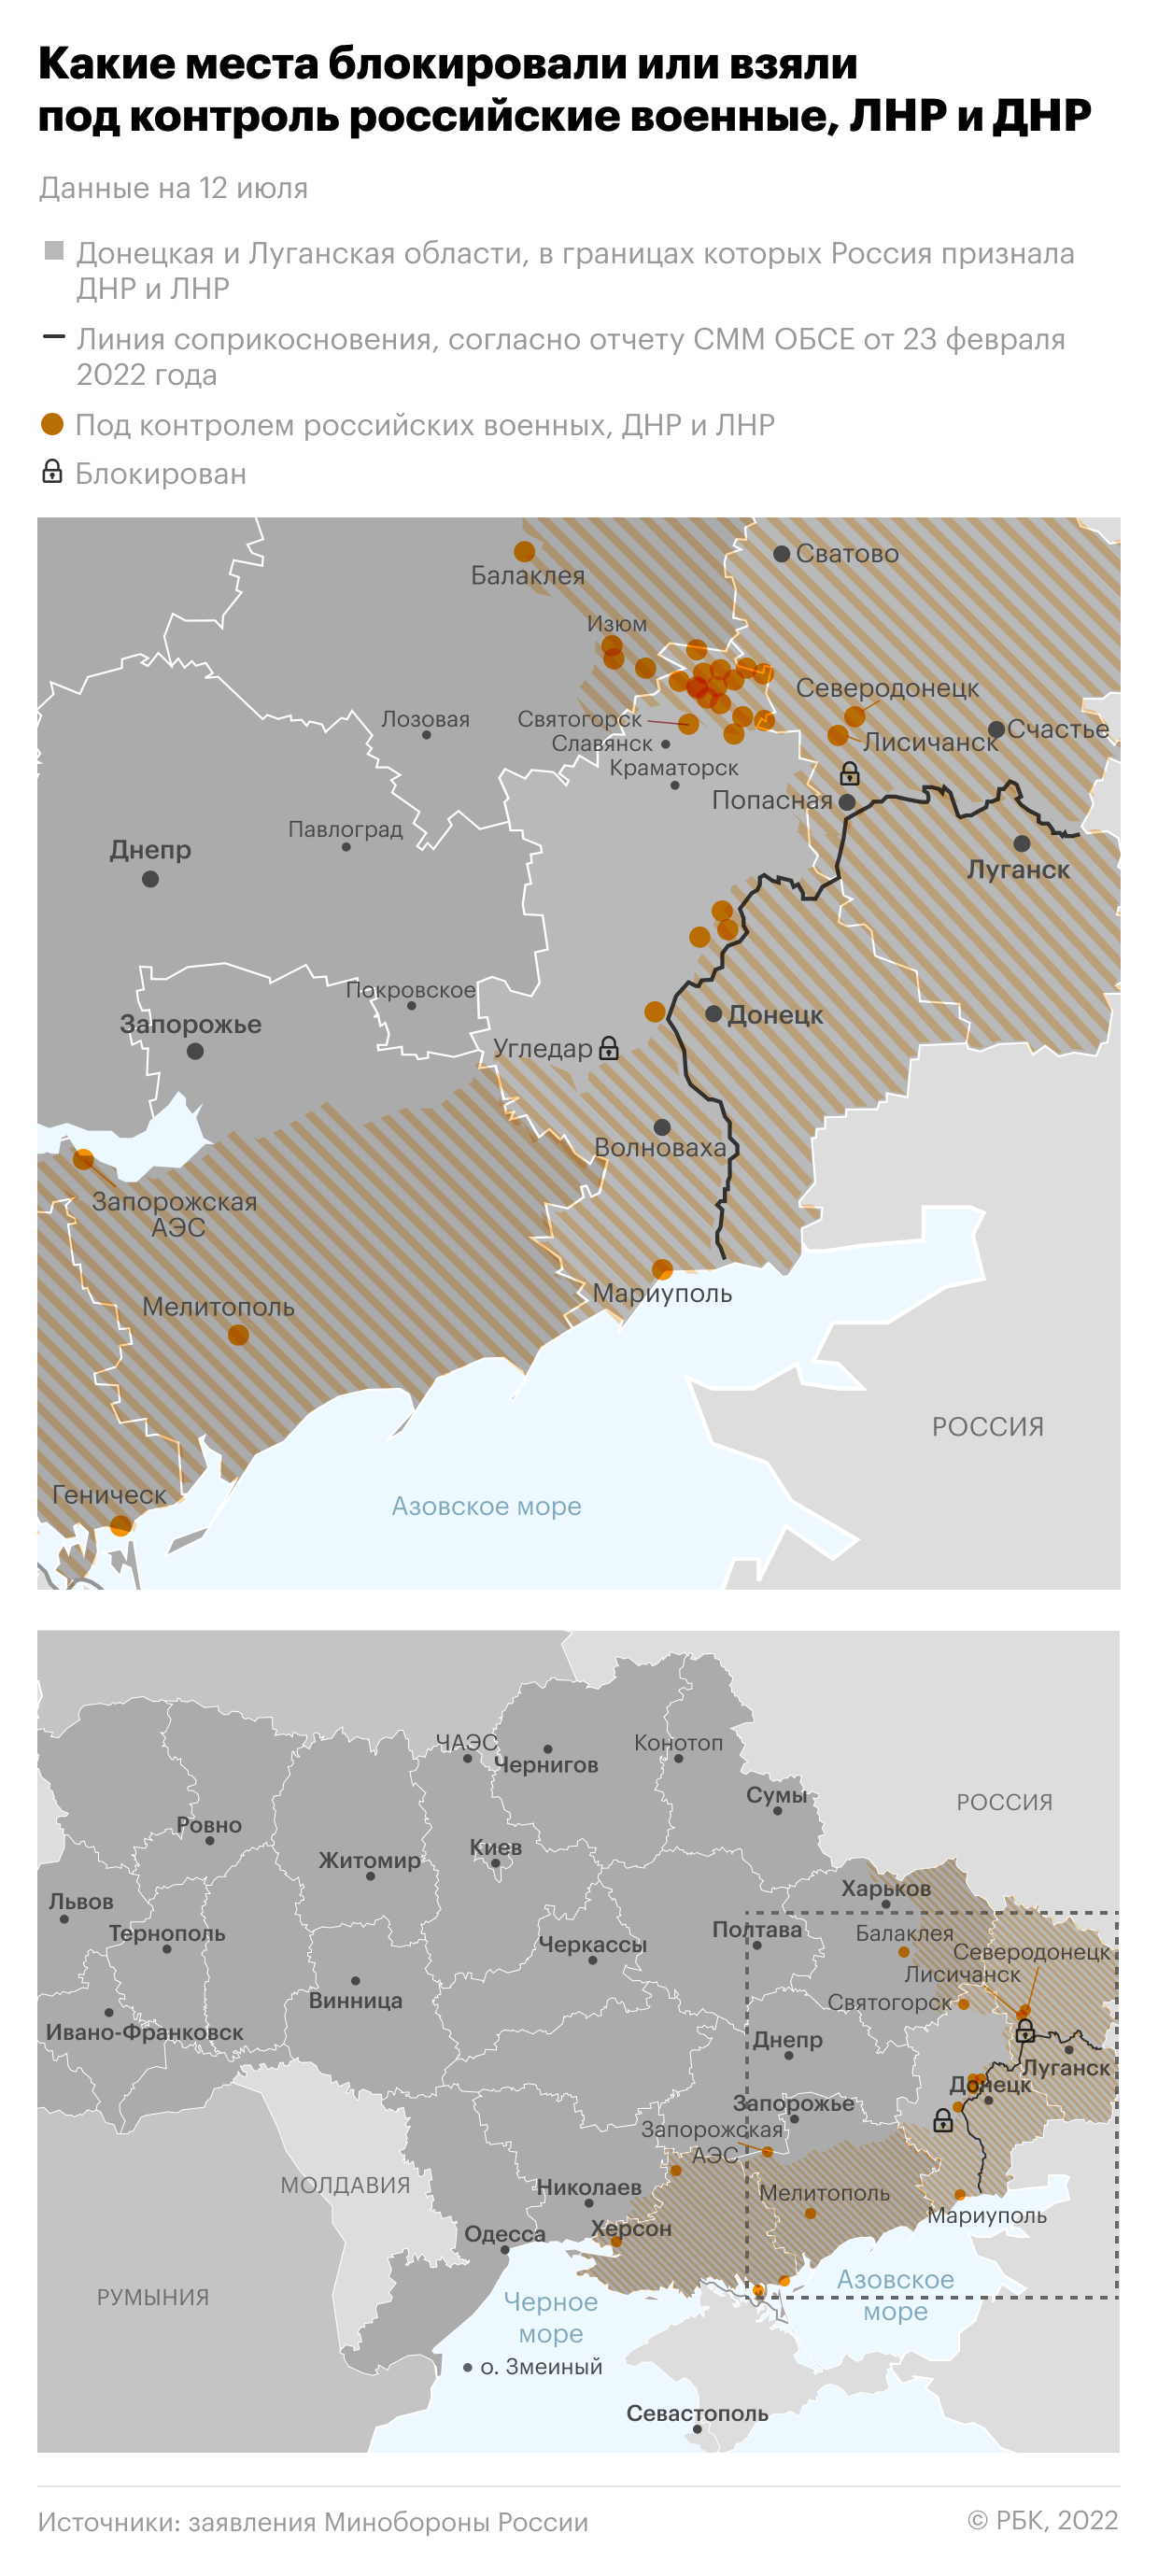 В Луганске сообщили о серии взрывов и сбитой «Точке-У»"/>













